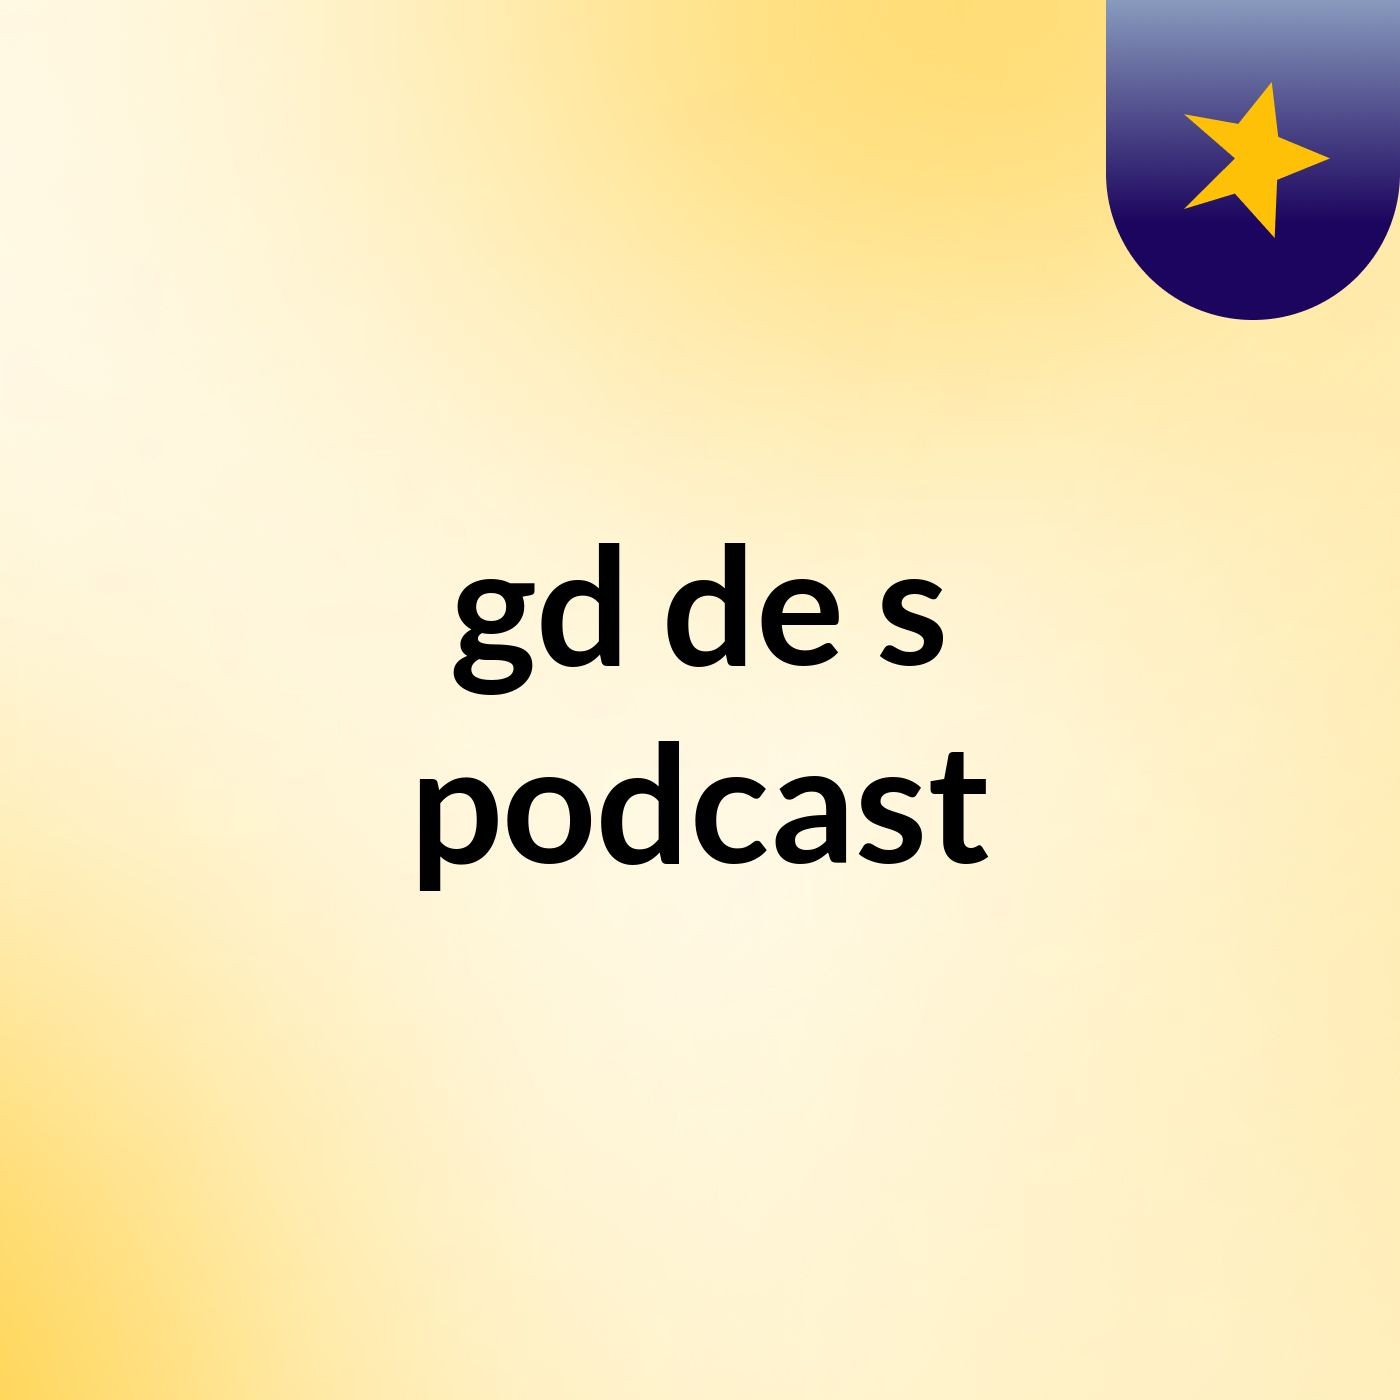 gd de's podcast